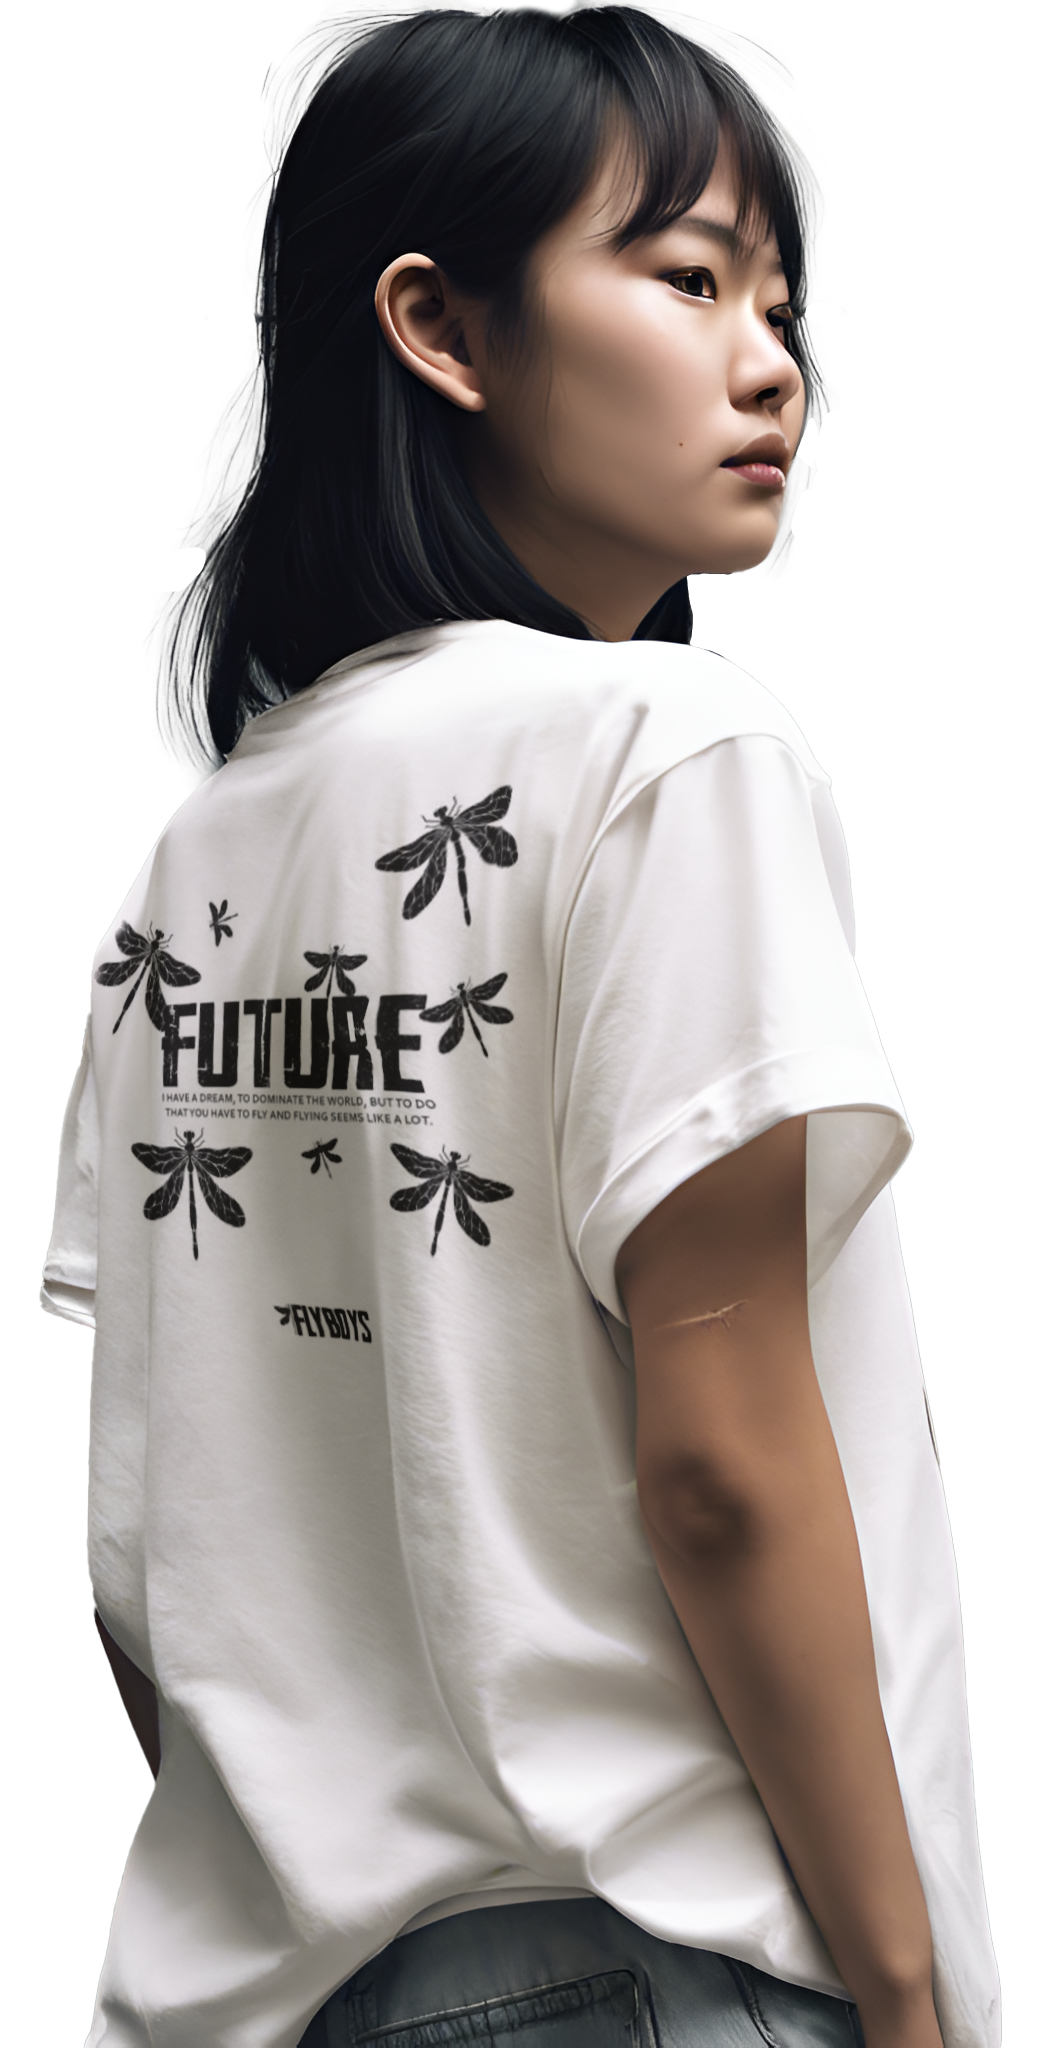 Modelo asiatica de costas utilizando uma camiseta off white com estampa preta